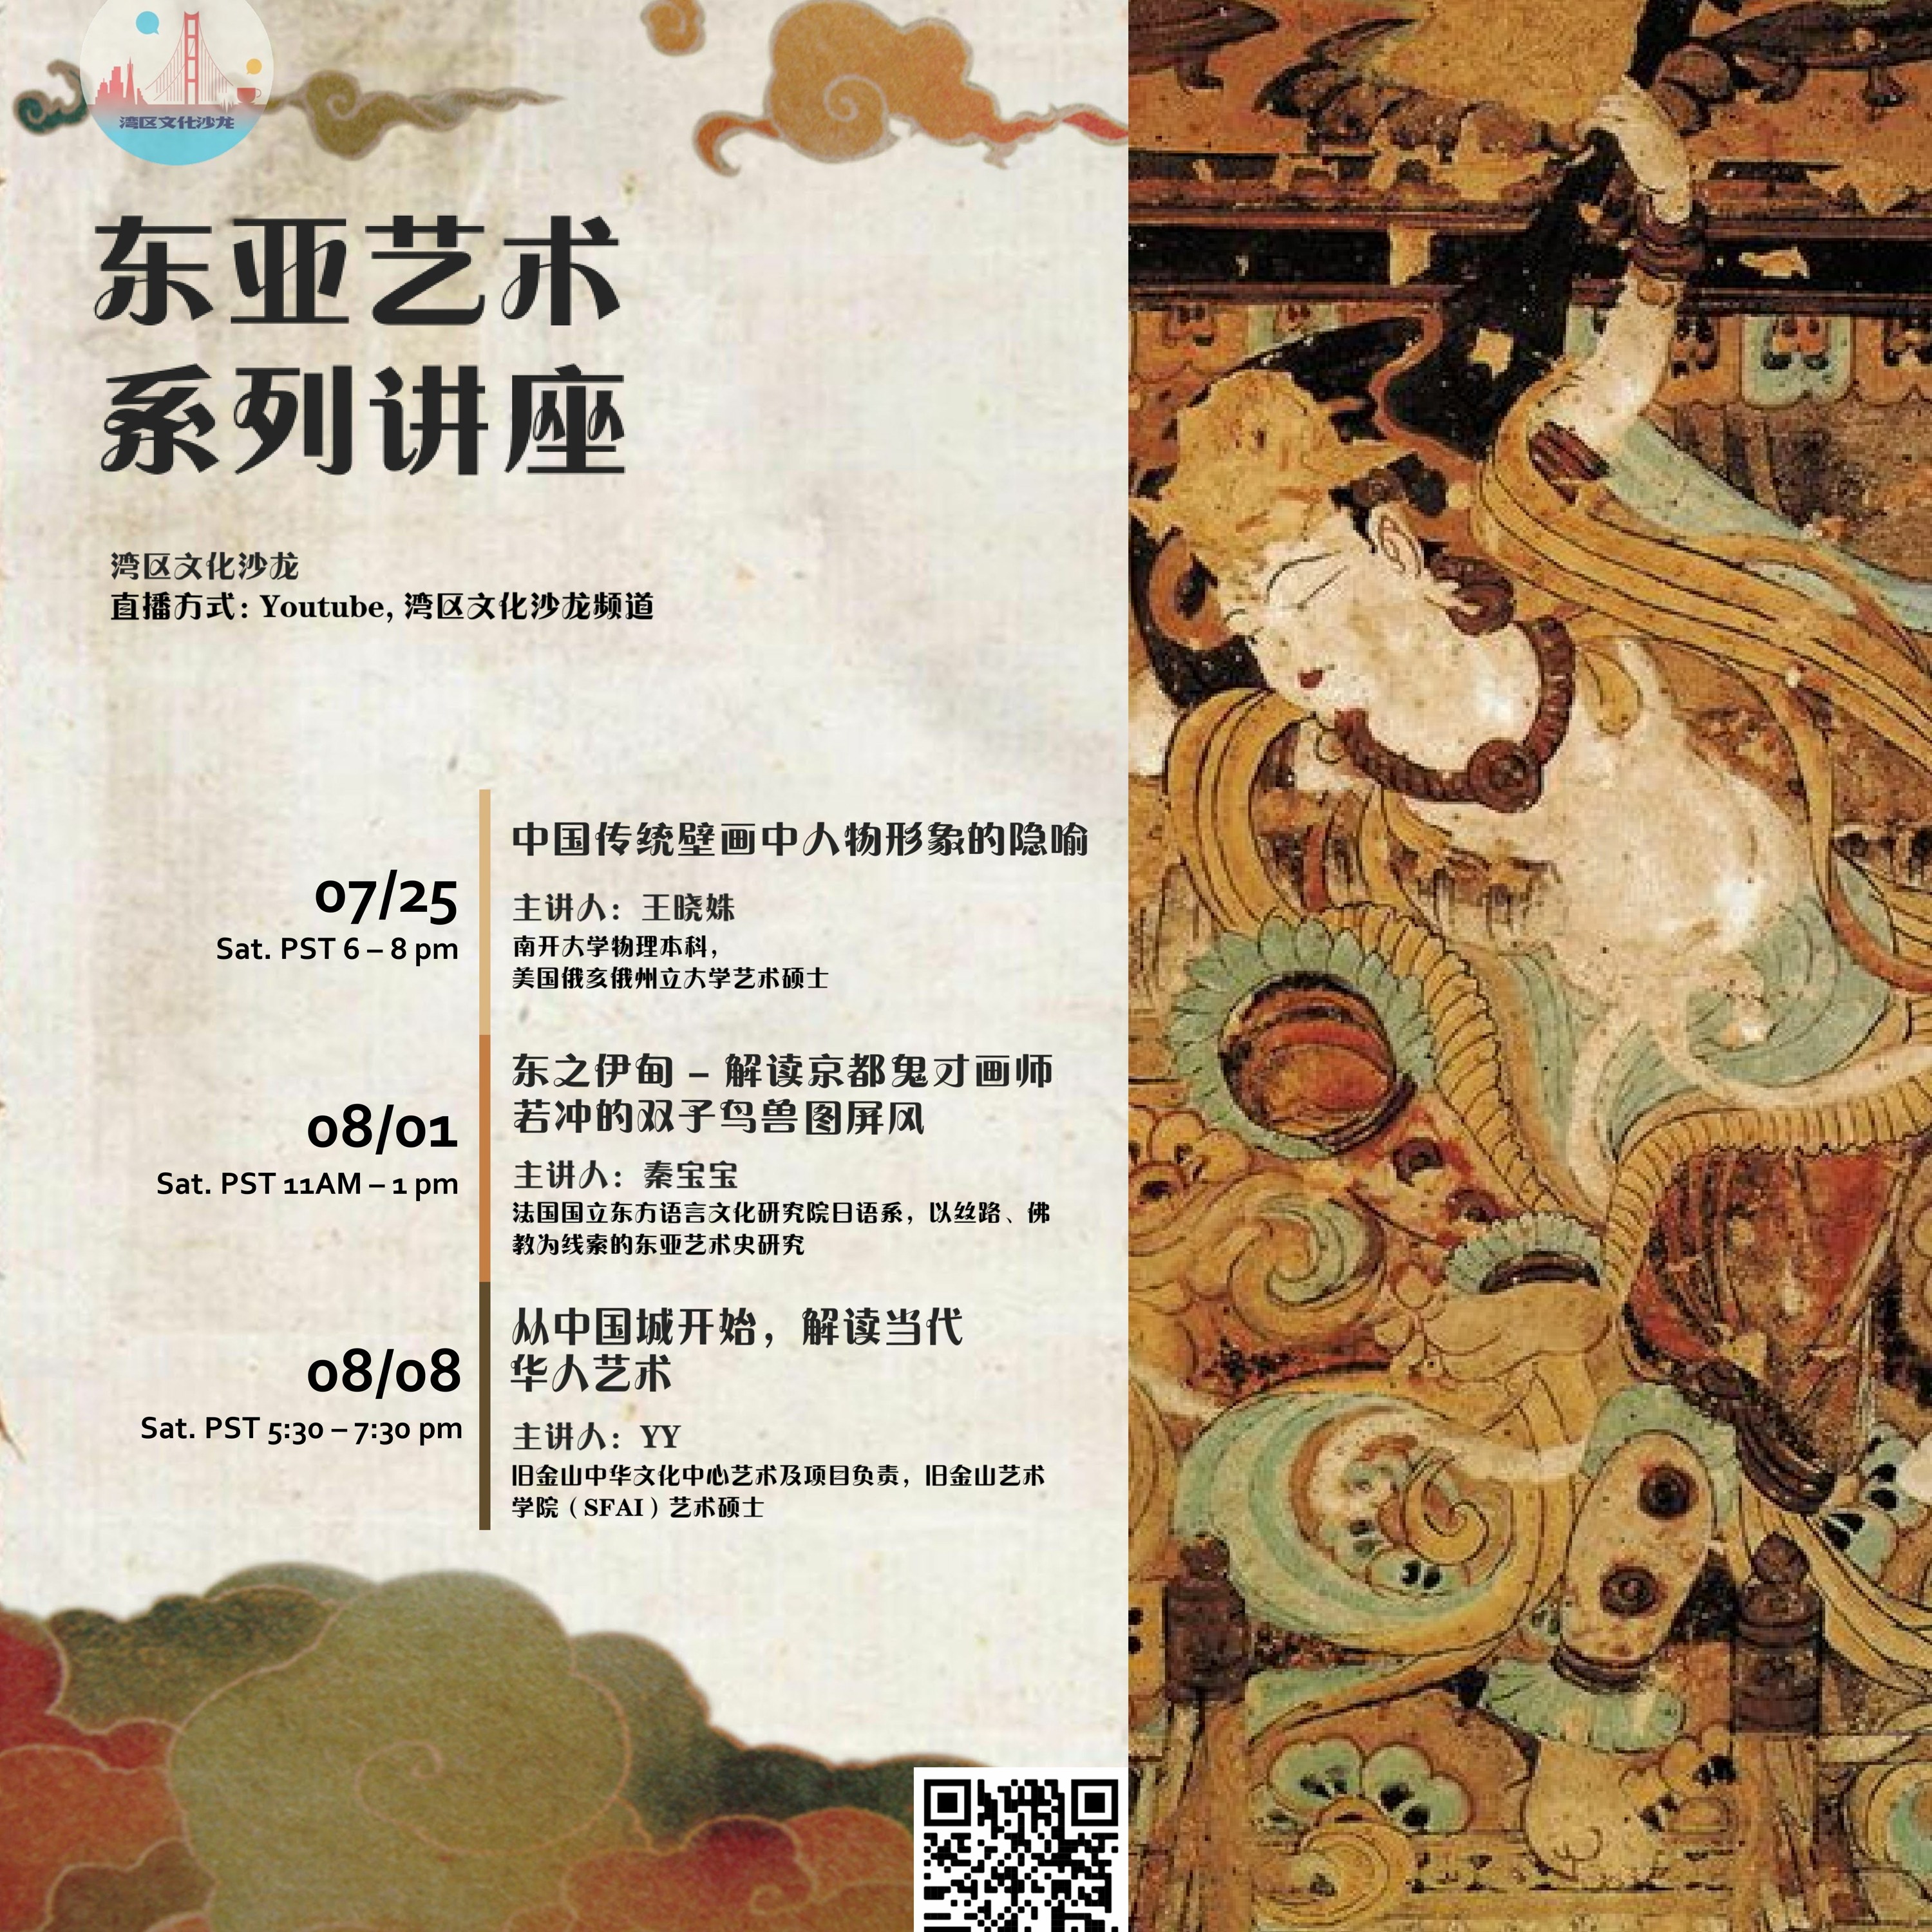 『线上艺术馆之东亚艺术系列第一期』中国传统壁画中人物形象的隐喻